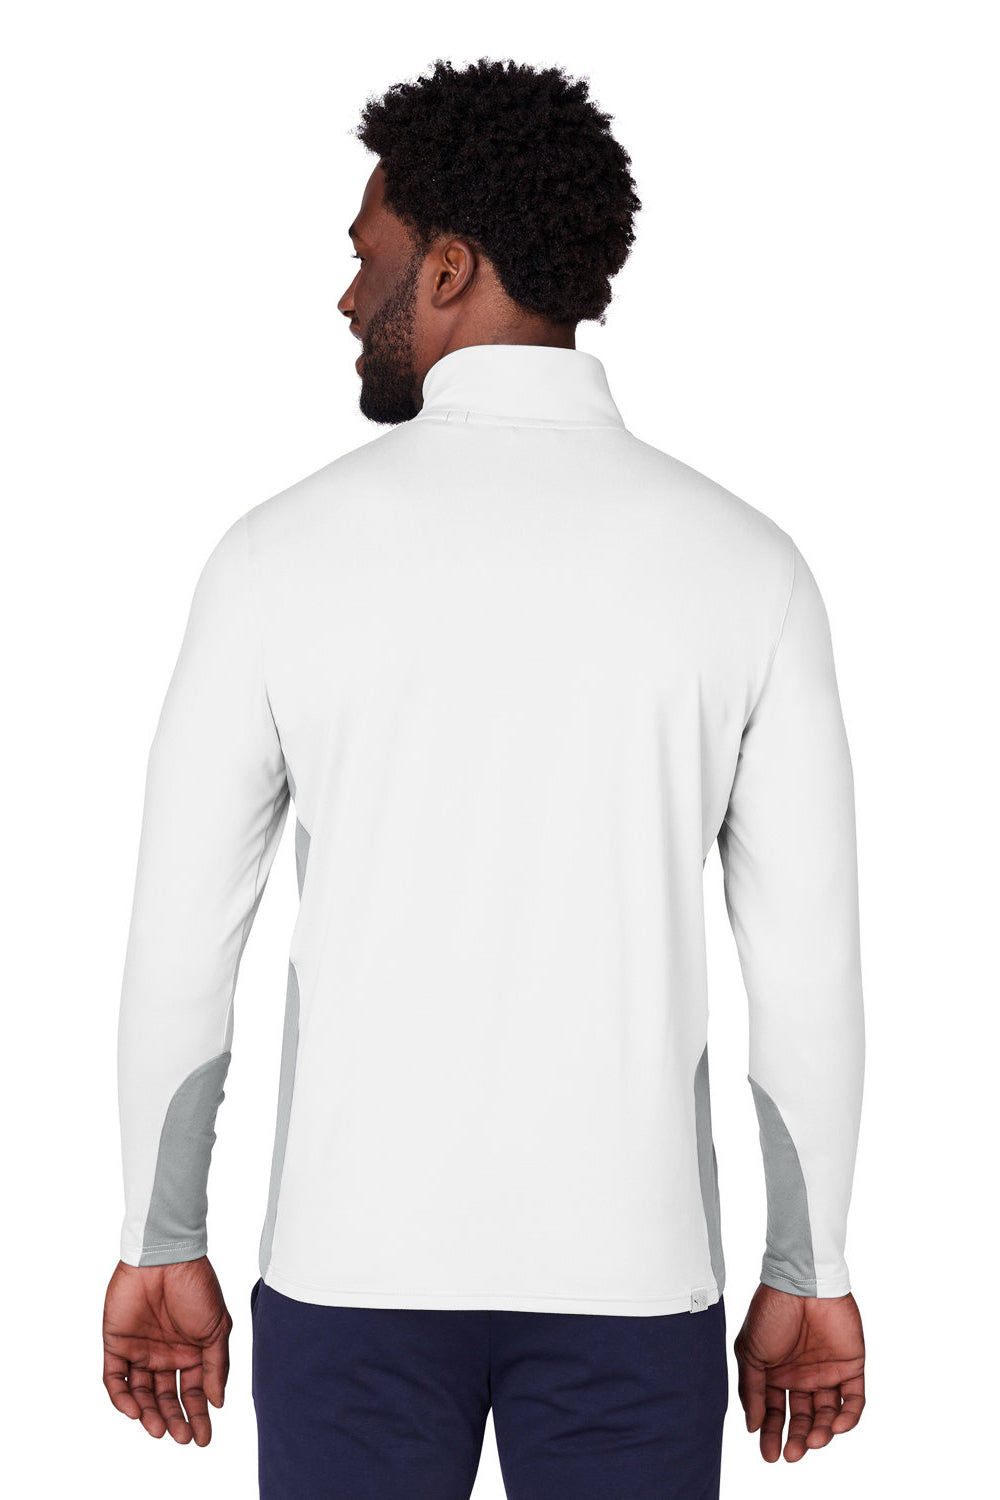 Puma 599127 Mens Gamer 1/4 Zip Sweatshirt Bright White Back